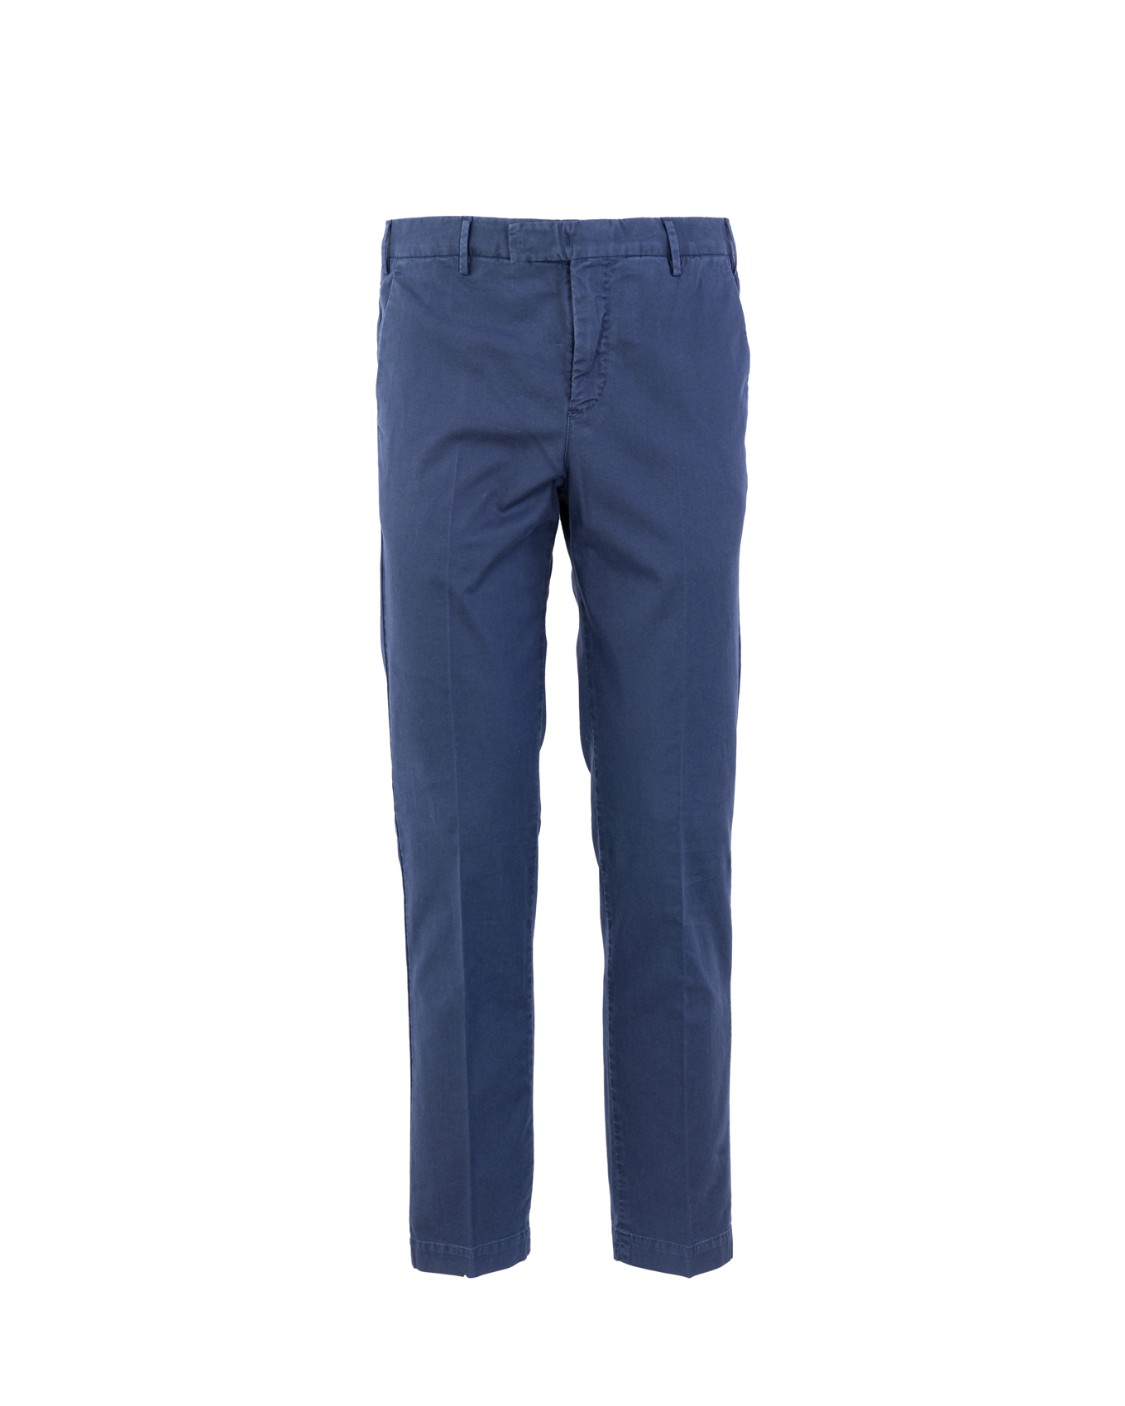 shop PT01  Pantalone: PT01 pantalone, elasticizzato, in cotone.
Slim fit.
Composizione: 97% cotone 3% seta.
Fabbricato in Italia.. COATMAZ00CL1 NU62-N370 number 3796480